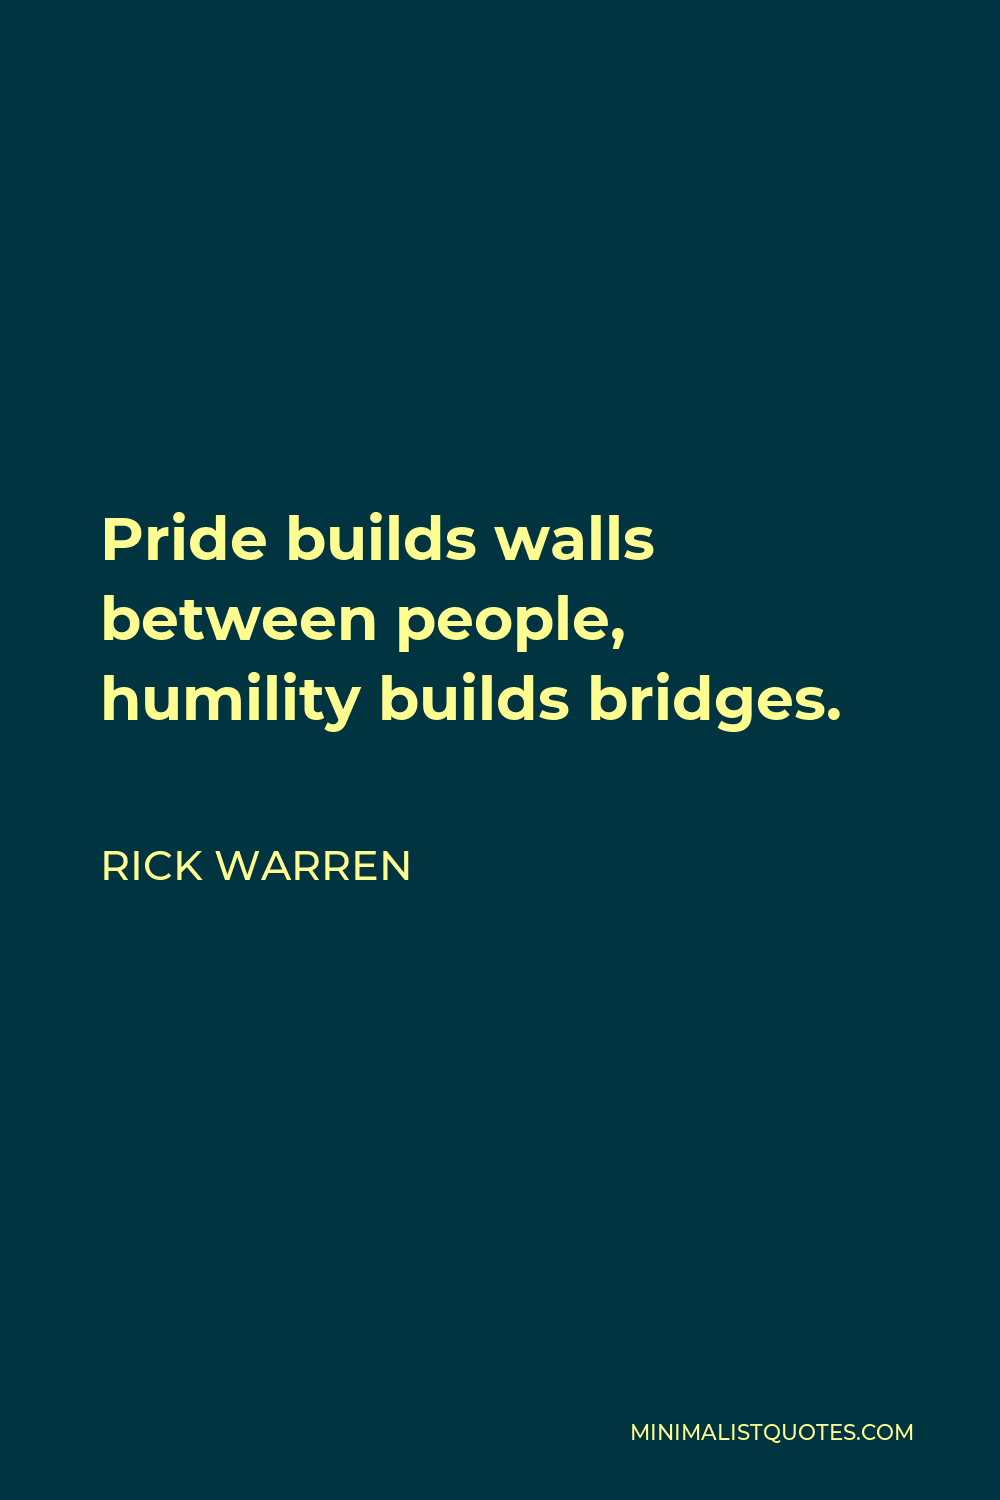 Rick Warren Quote - Pride builds walls between people, humility builds bridges.